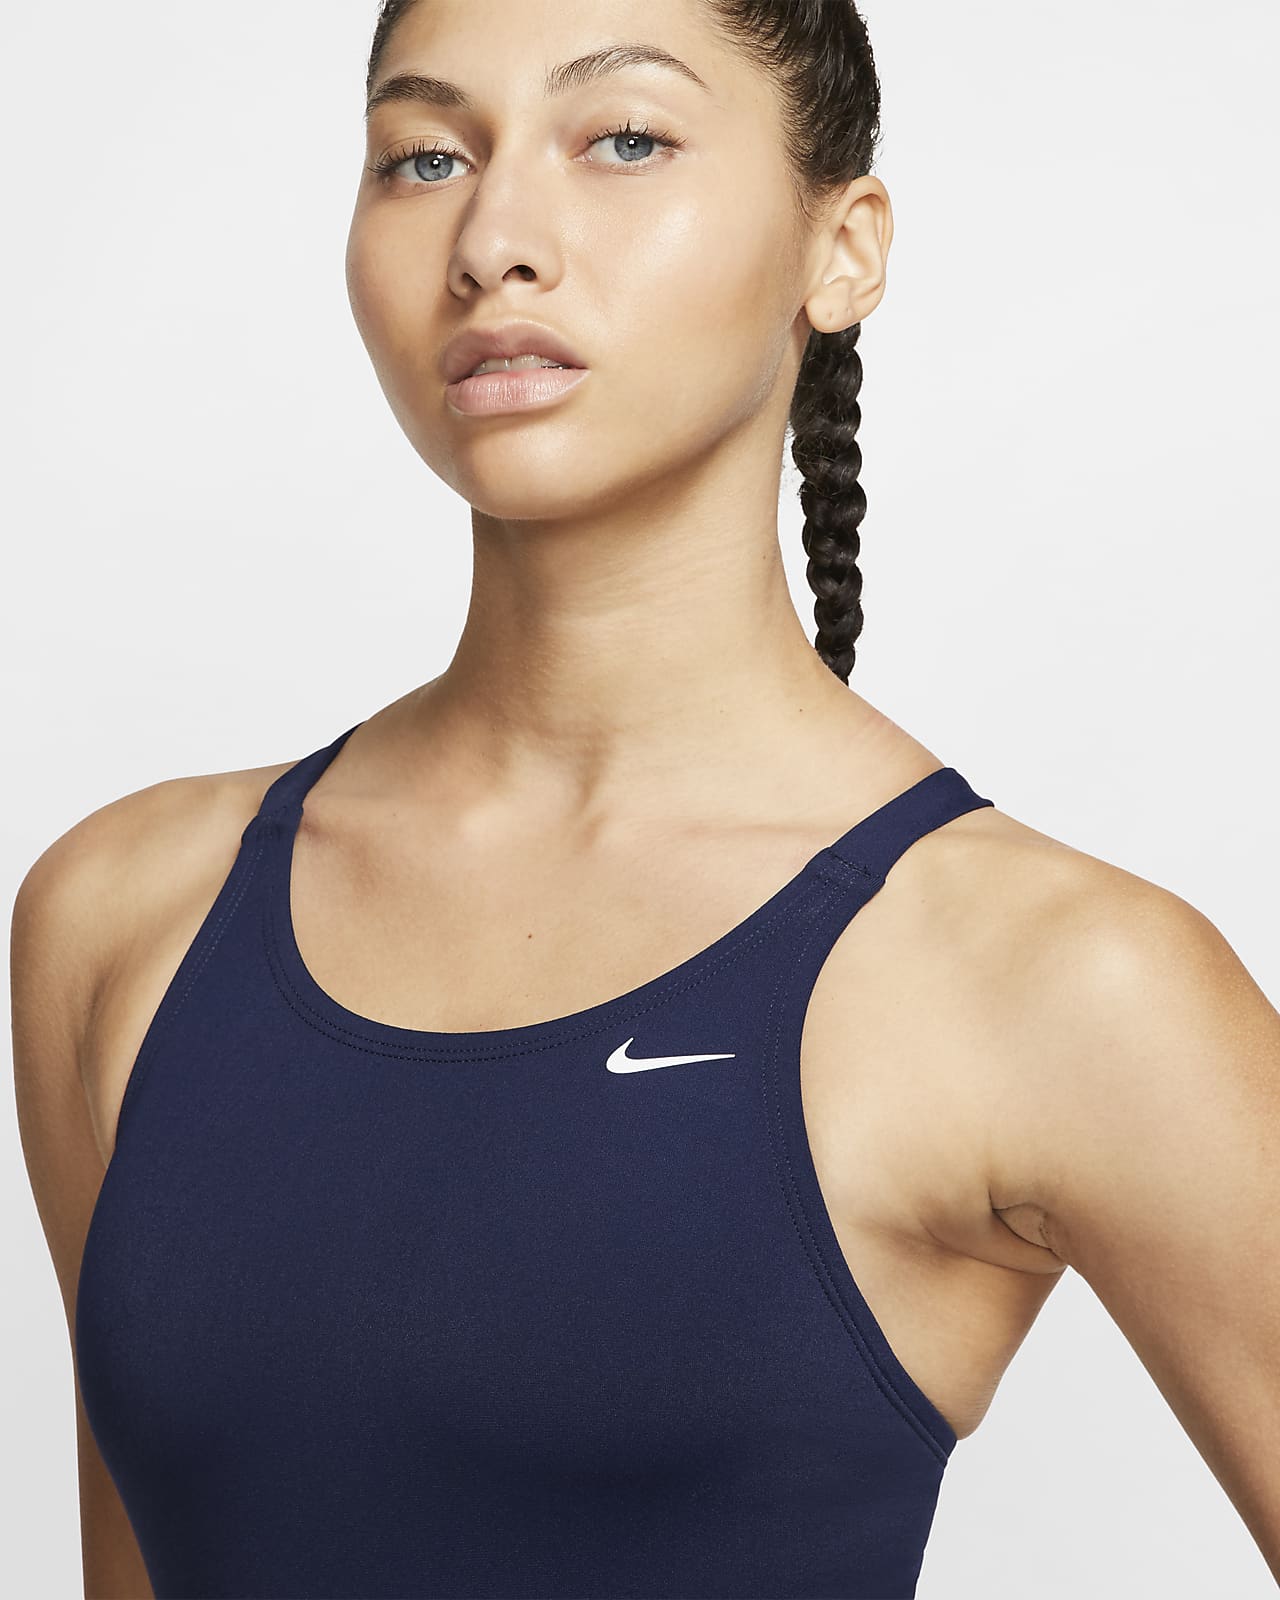 Nike Fastback Women's One-Piece Swimsuit.